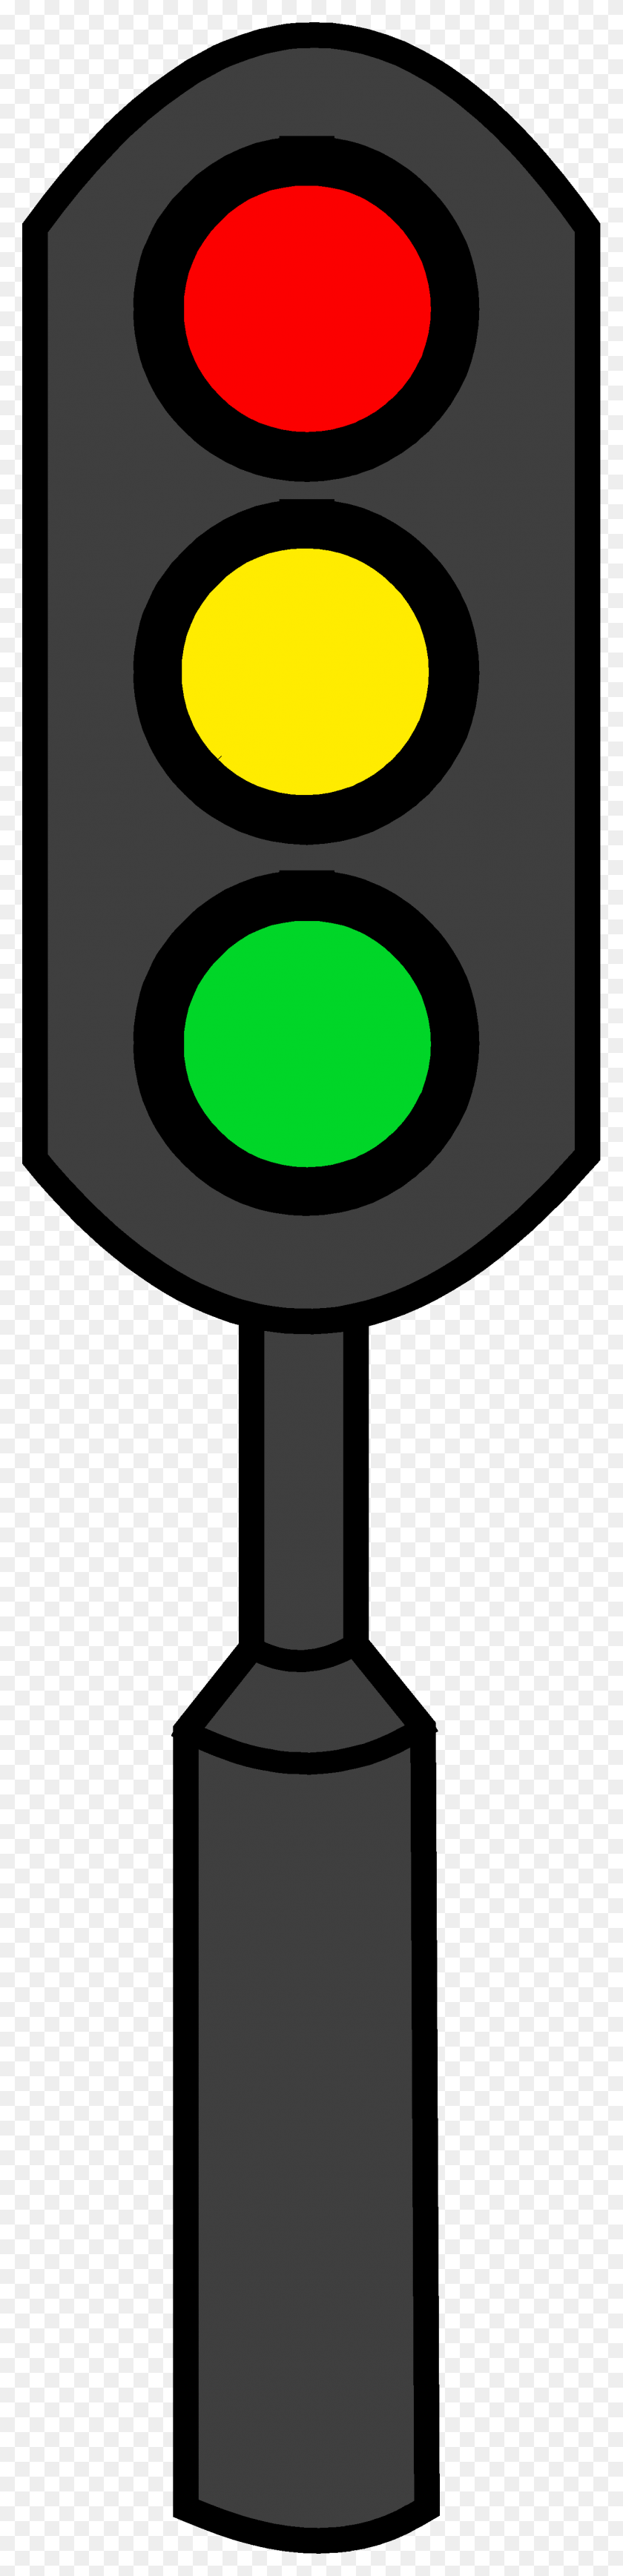 1312x5743 Green Stop Light Clipart - Green Light Clipart